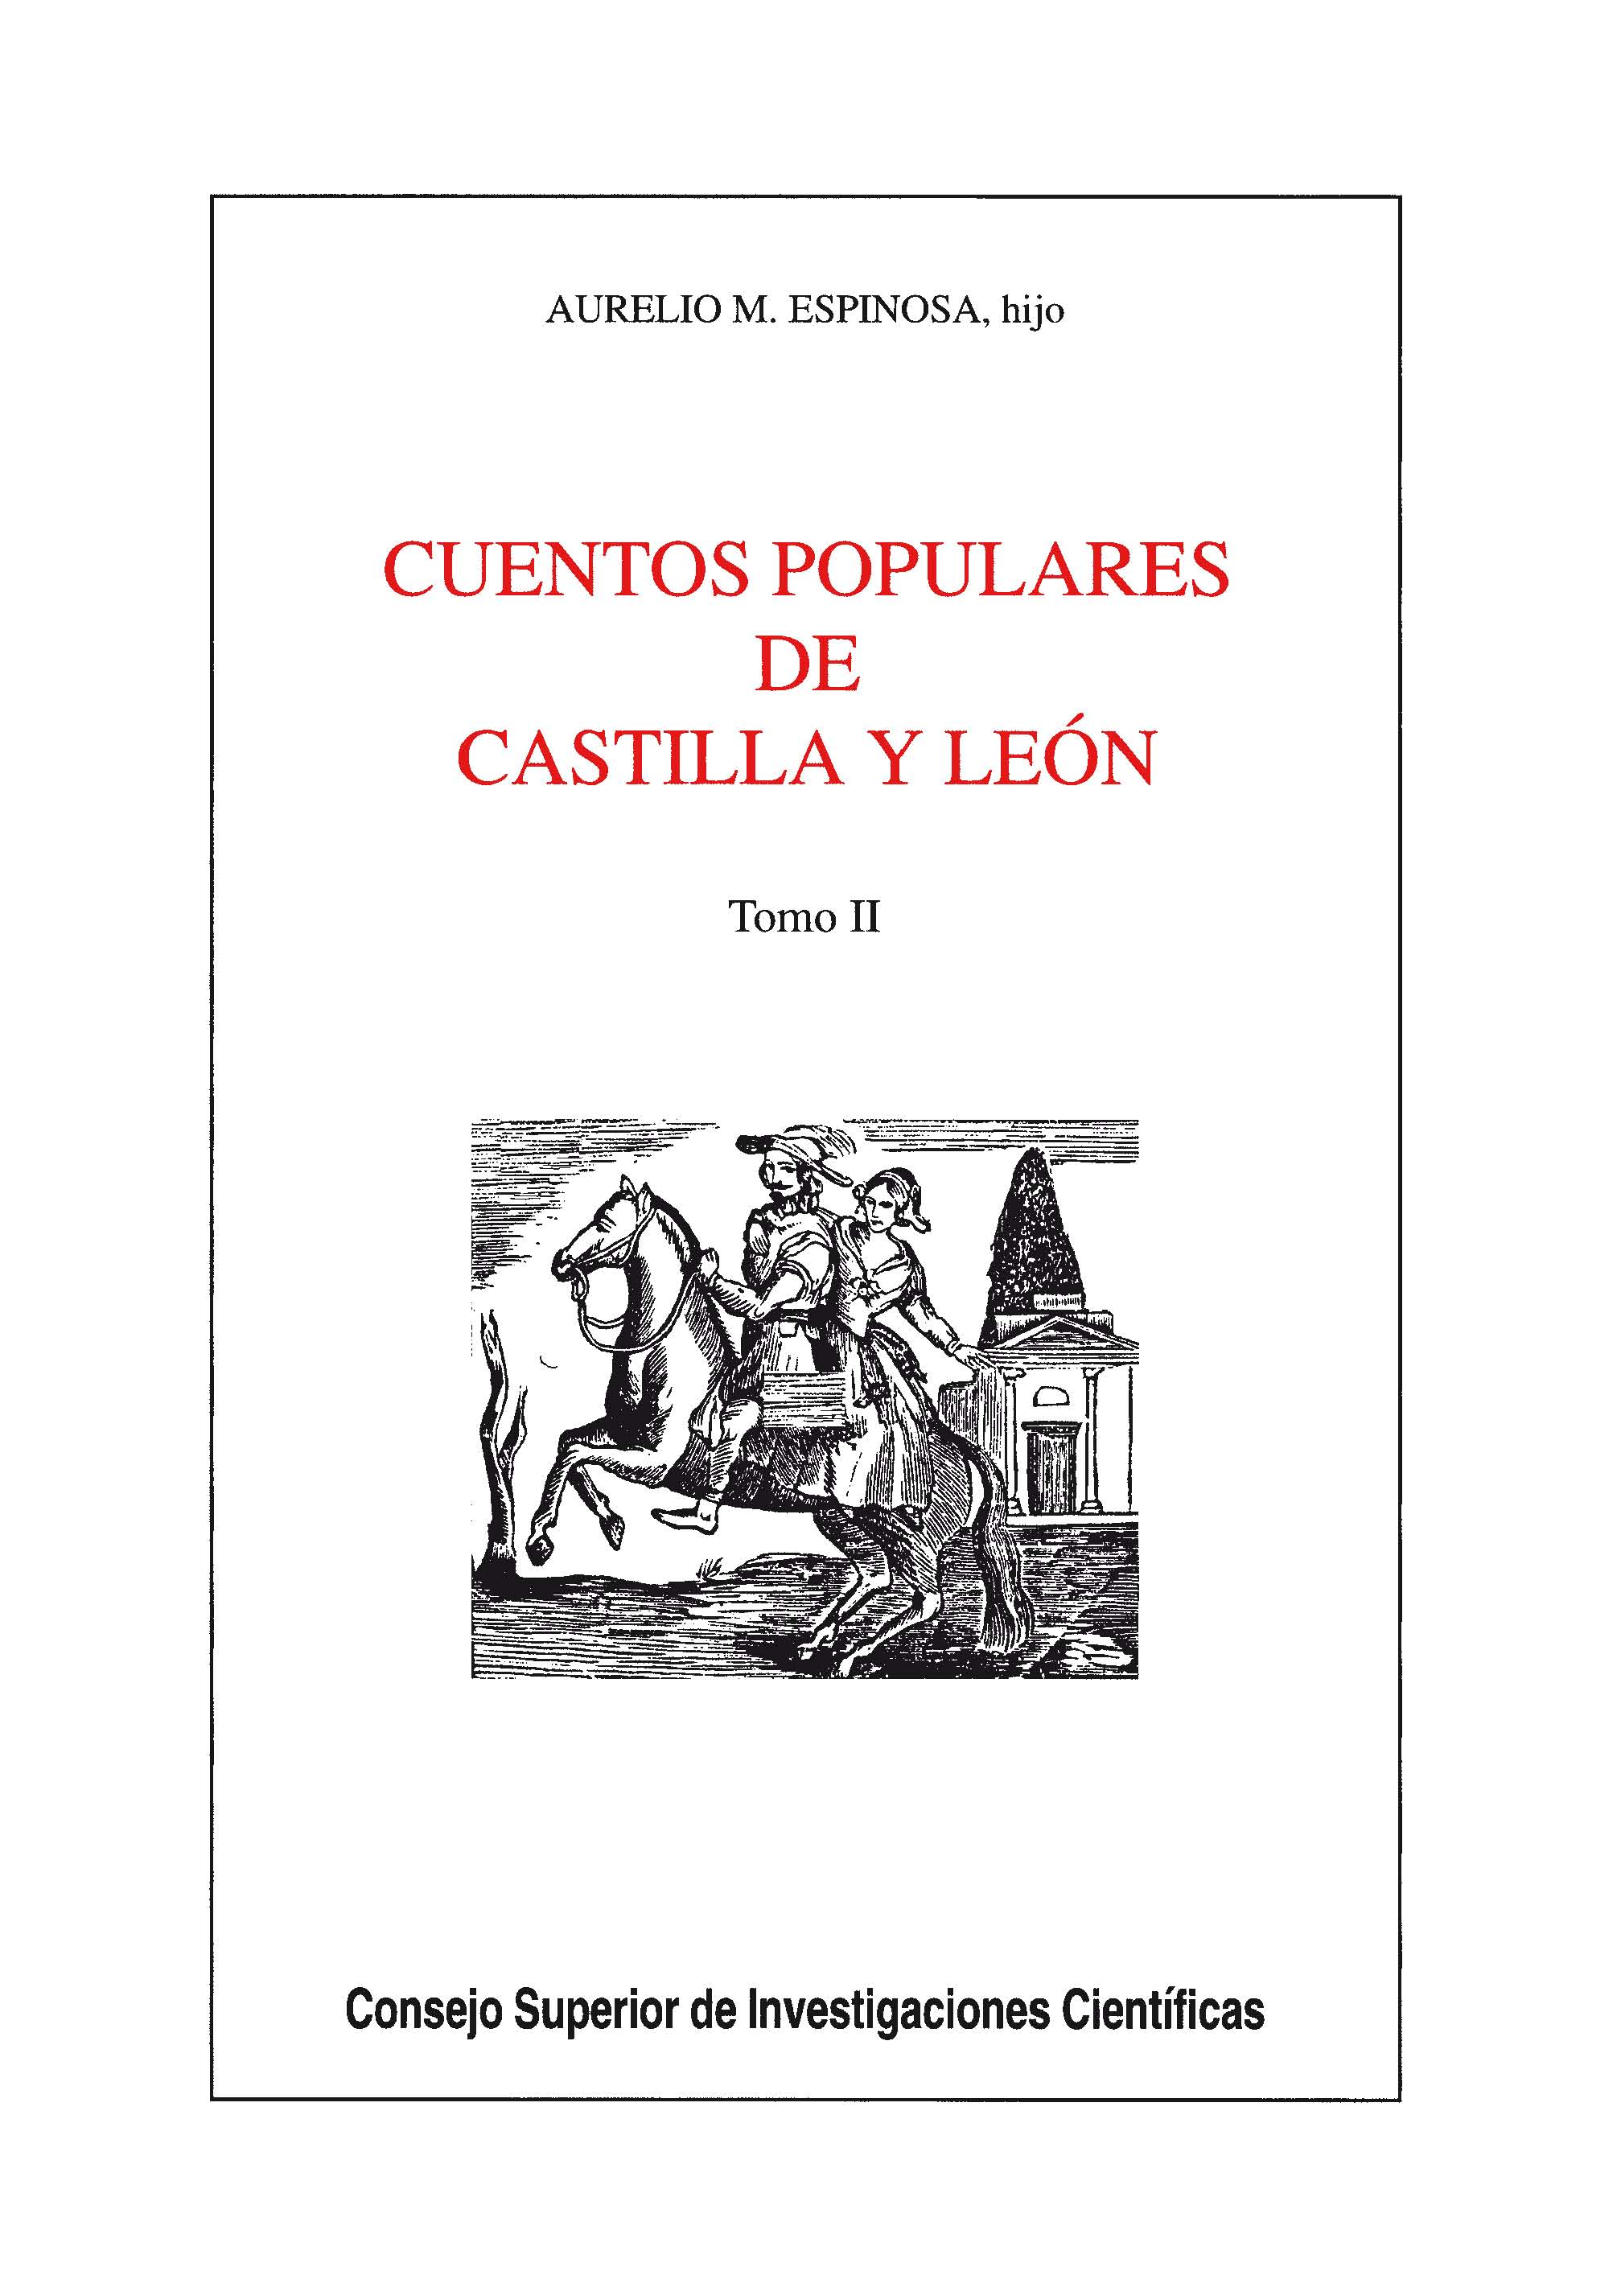 Cuentos populares de Castilla y León. Tomo II